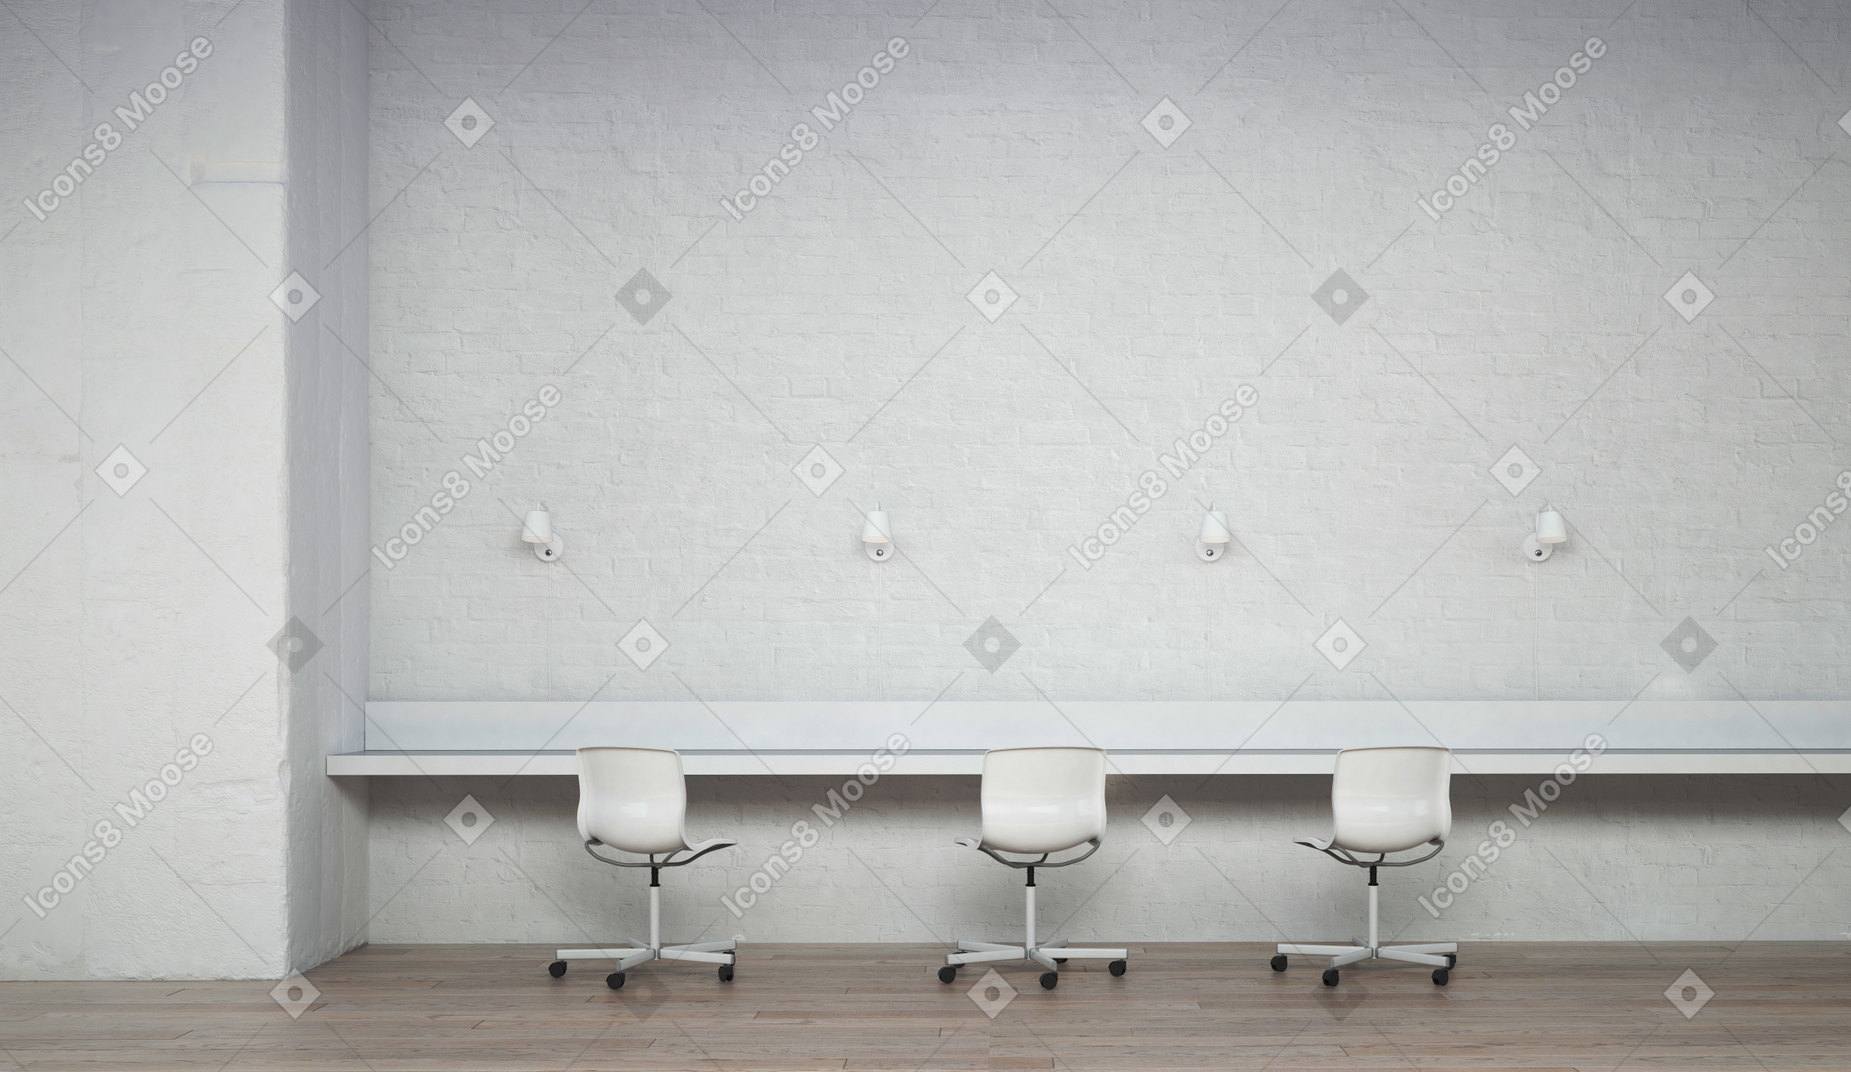 흰색 벽돌 벽, 좁은 테이블과 의자가 있는 방